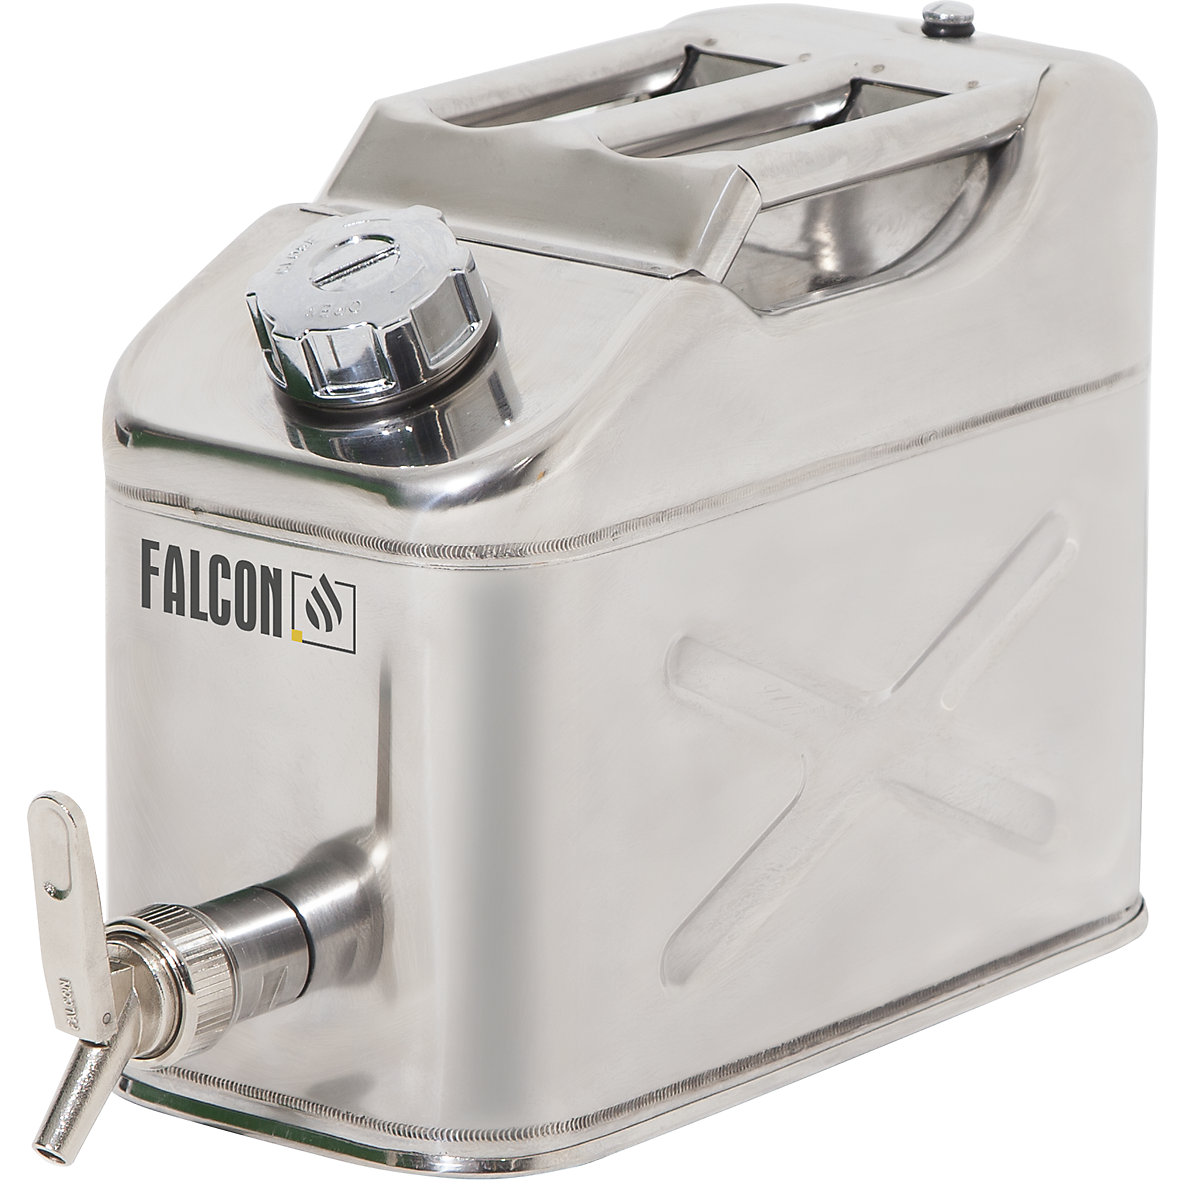 Canistră de siguranţă cu robinet pentru dozare fină - FALCON